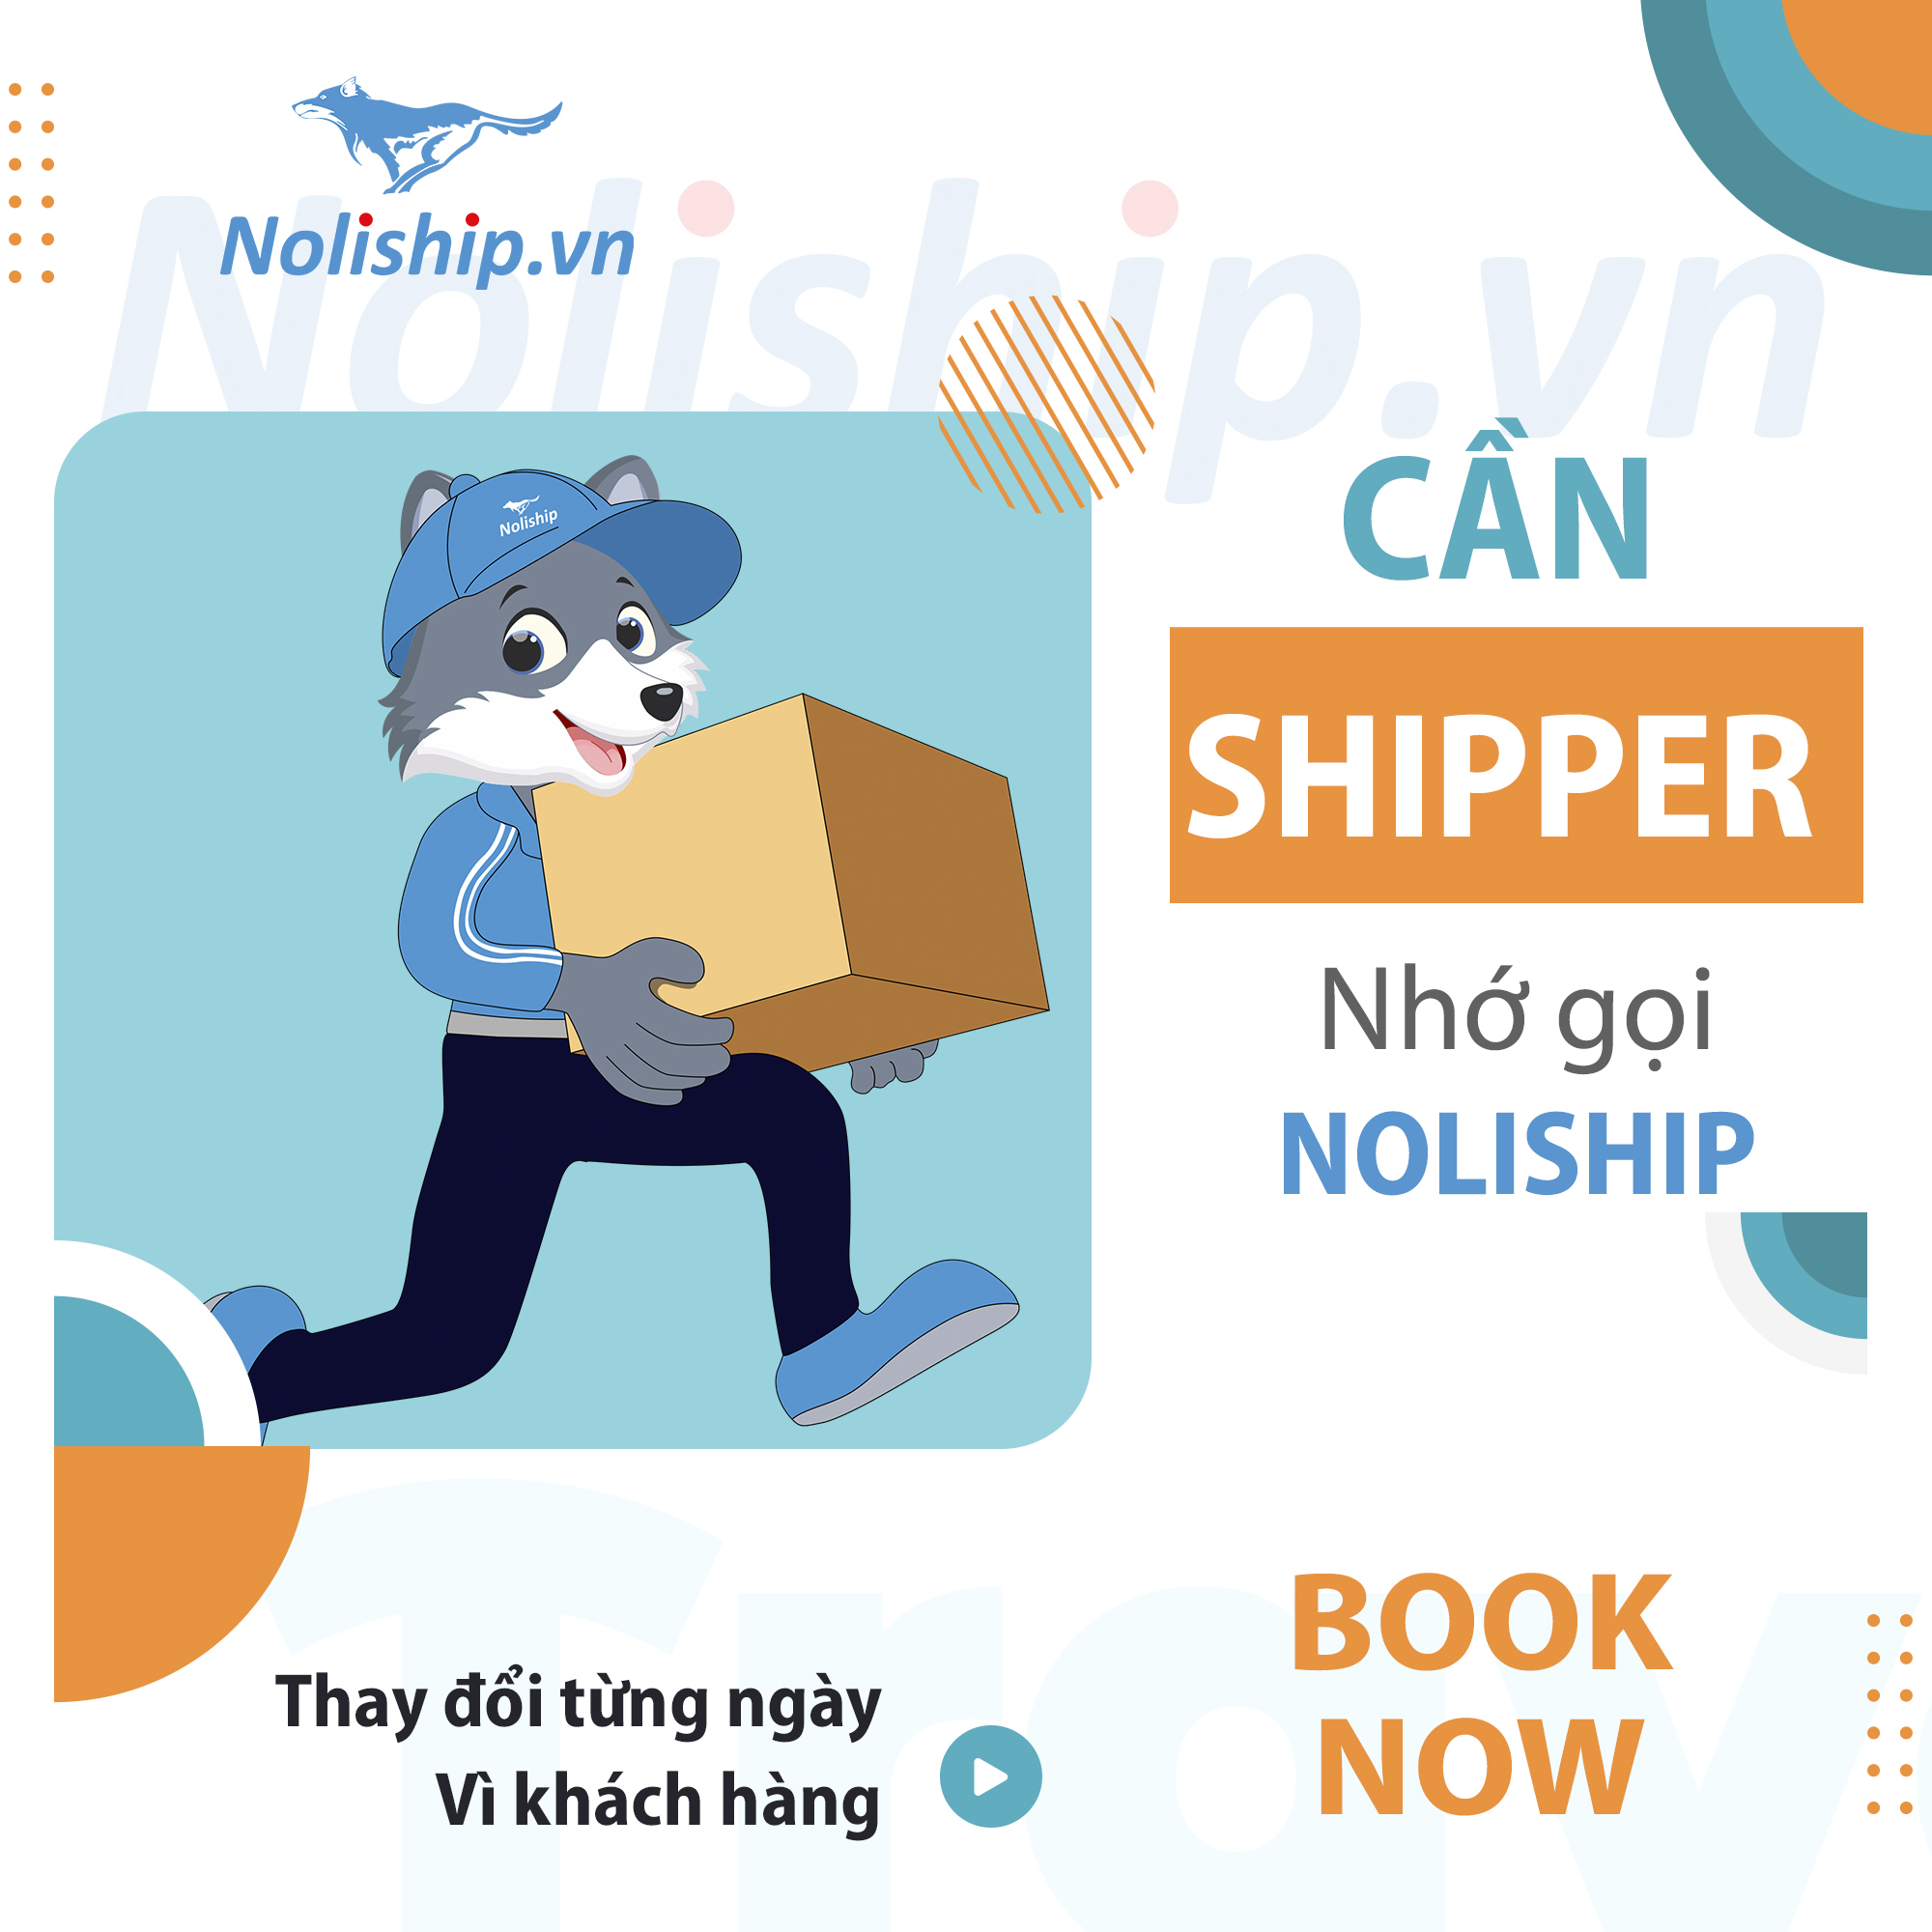 Cần Shipper, Nhớ gọi Noli - Noliship luôn đồng hành cùng Qúy khách hàng